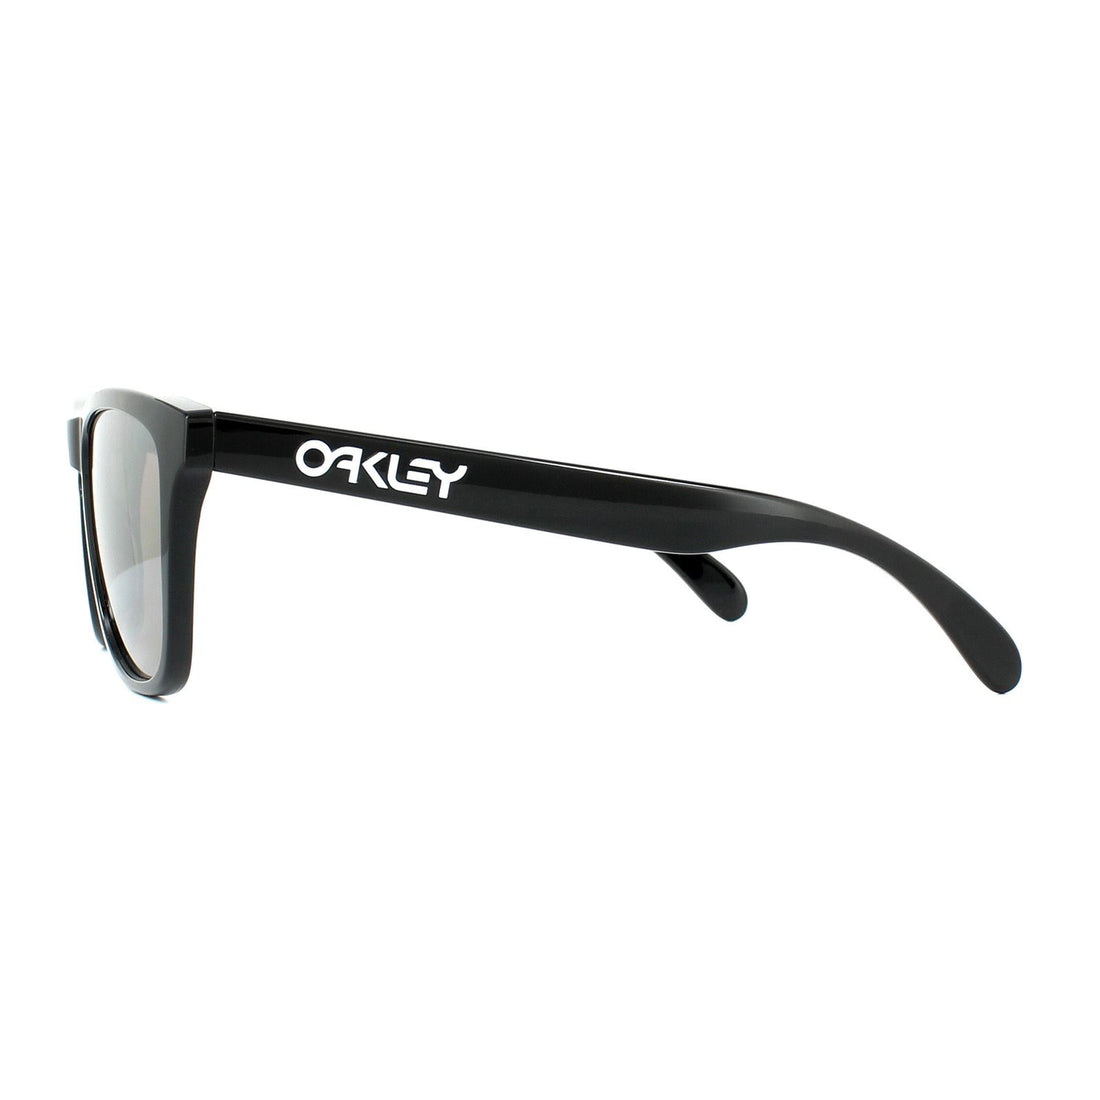 Oakley Sunglasses Frogskins OO9013-C4 Polished Black Prizm Black